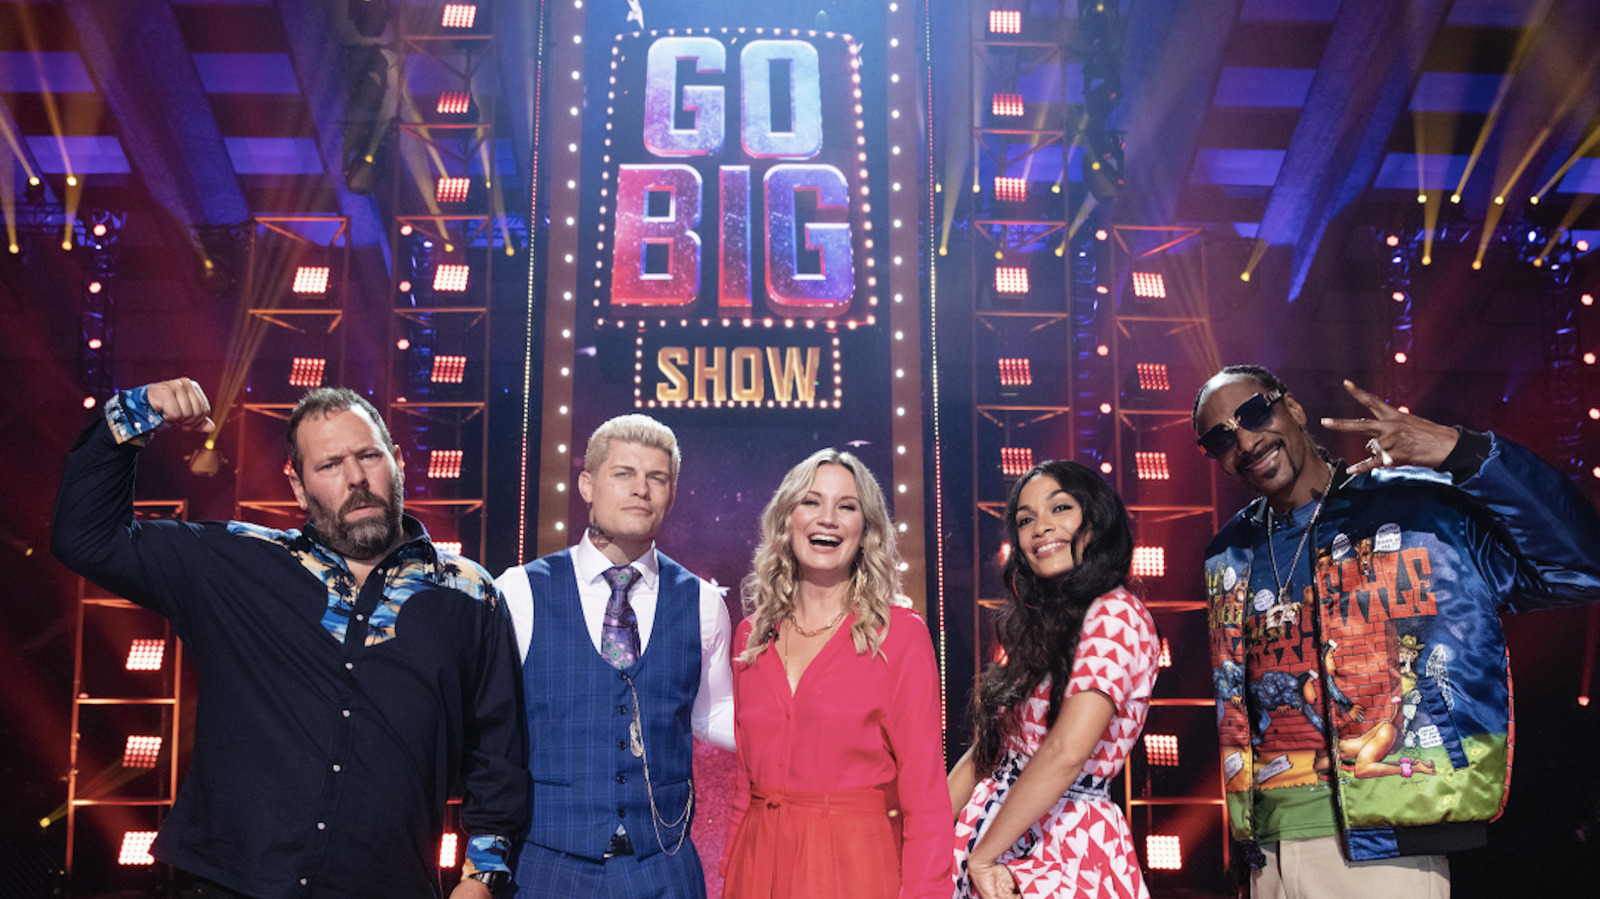 Watch Go-Big Show - Season 2